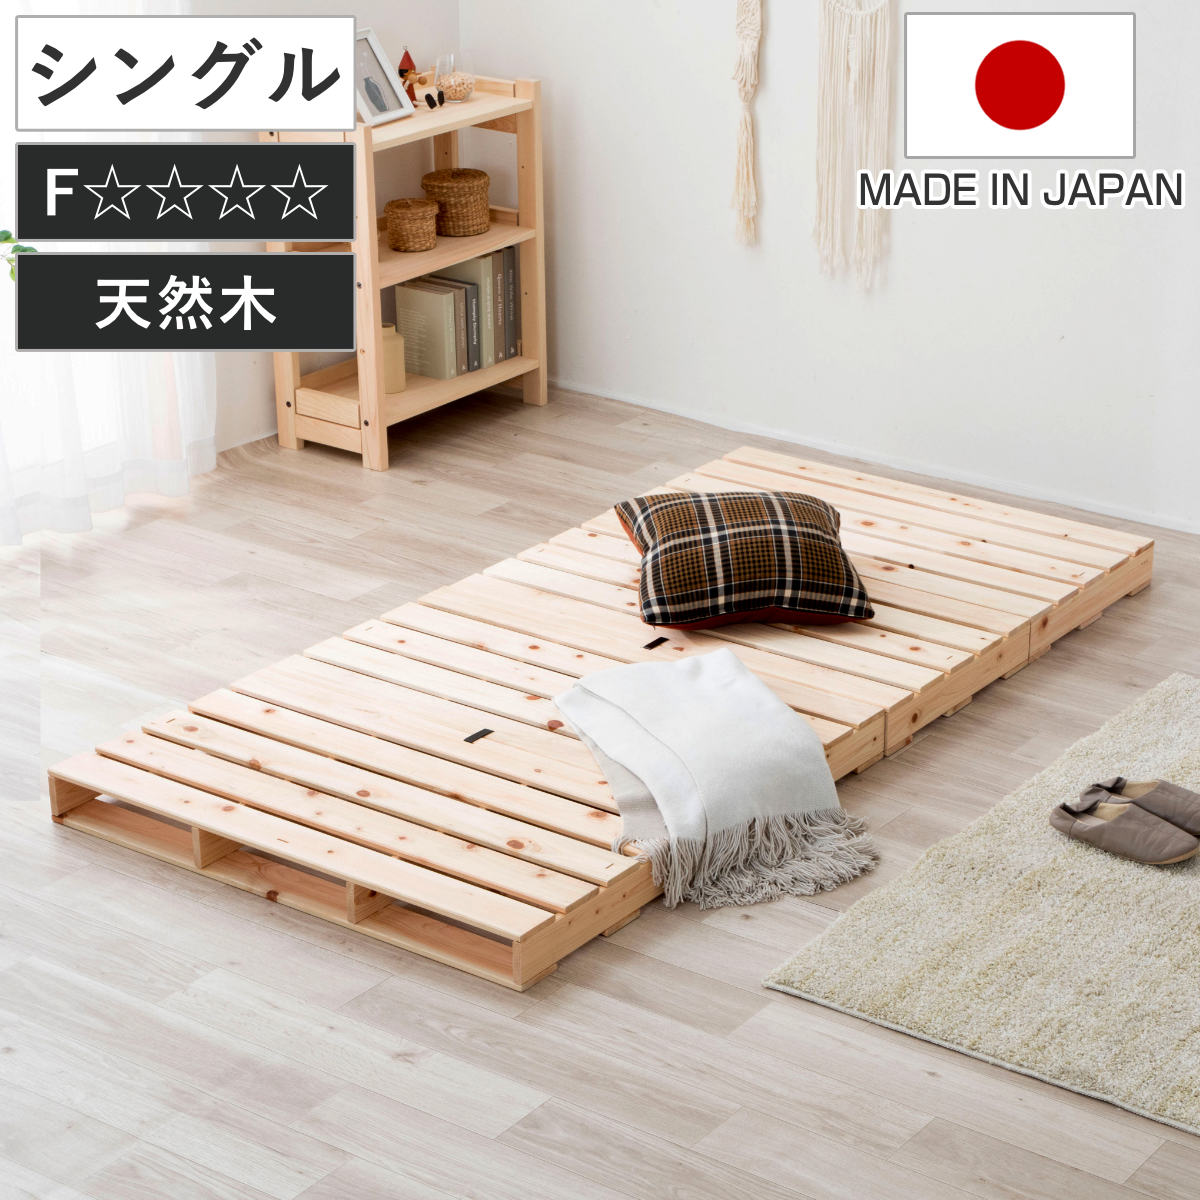 パレットベッド シングル 国産ひのき すのこ 日本製 フロアベッド ロータイプ 連結可能 組合せ アレンジ 自由 シンプル ナチュラル 無塗装 木製 天然木 98x200cm